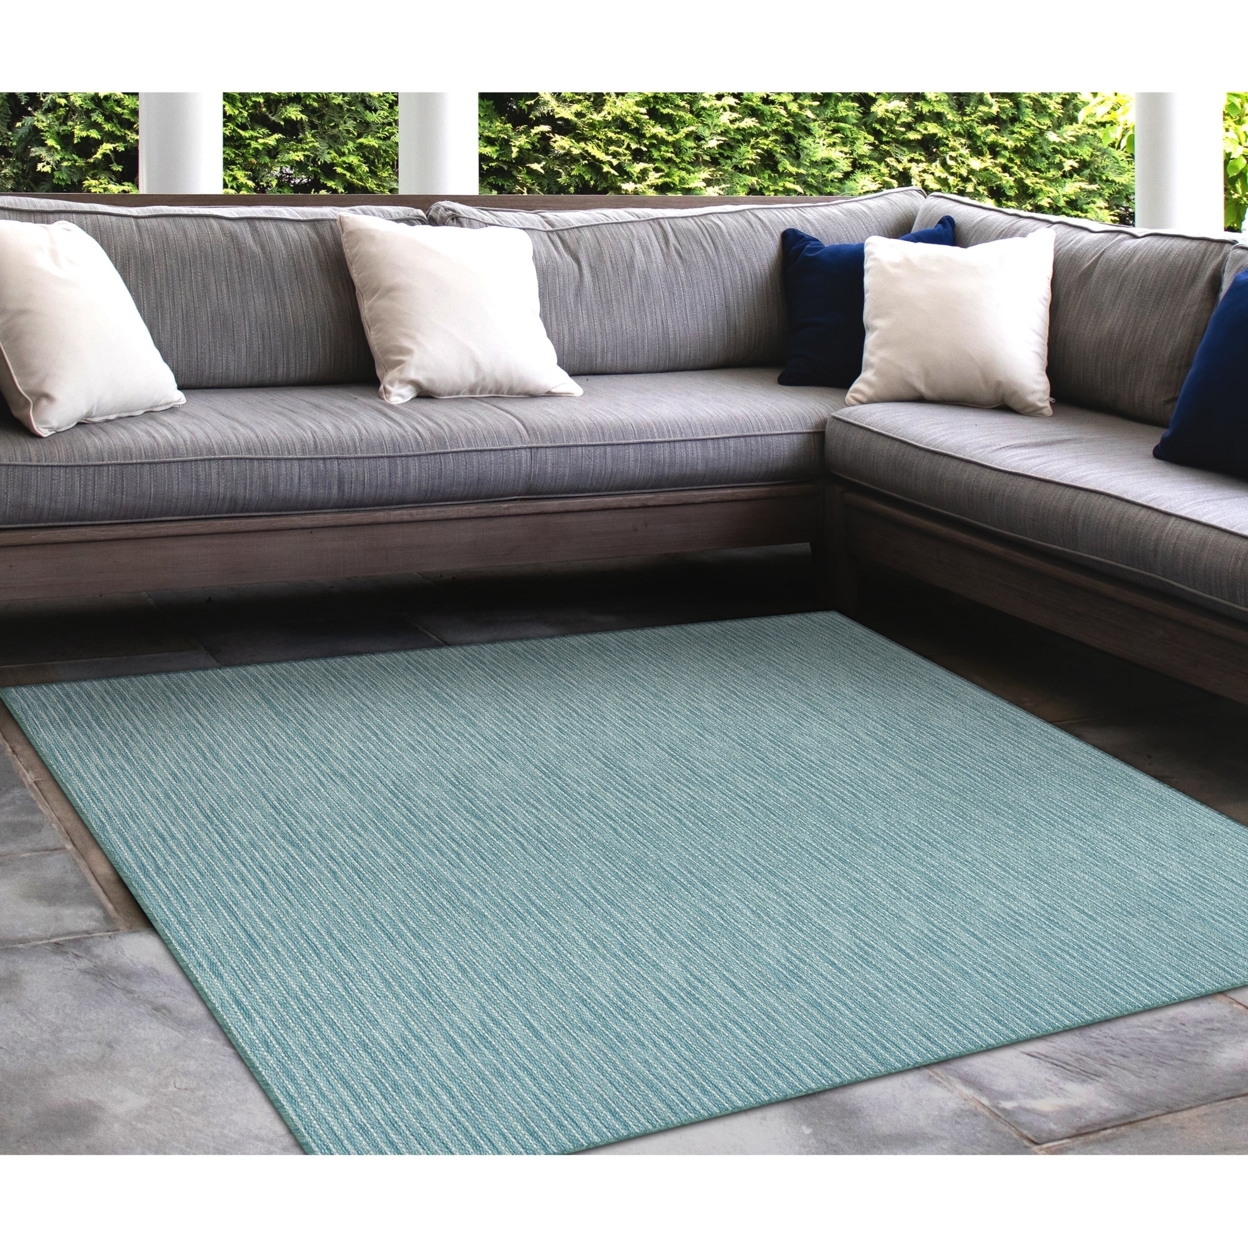 Liora Manne Carmel Texture Stripe Indoor Outdoor Area Rug Aqua - 4'10 X 7'6